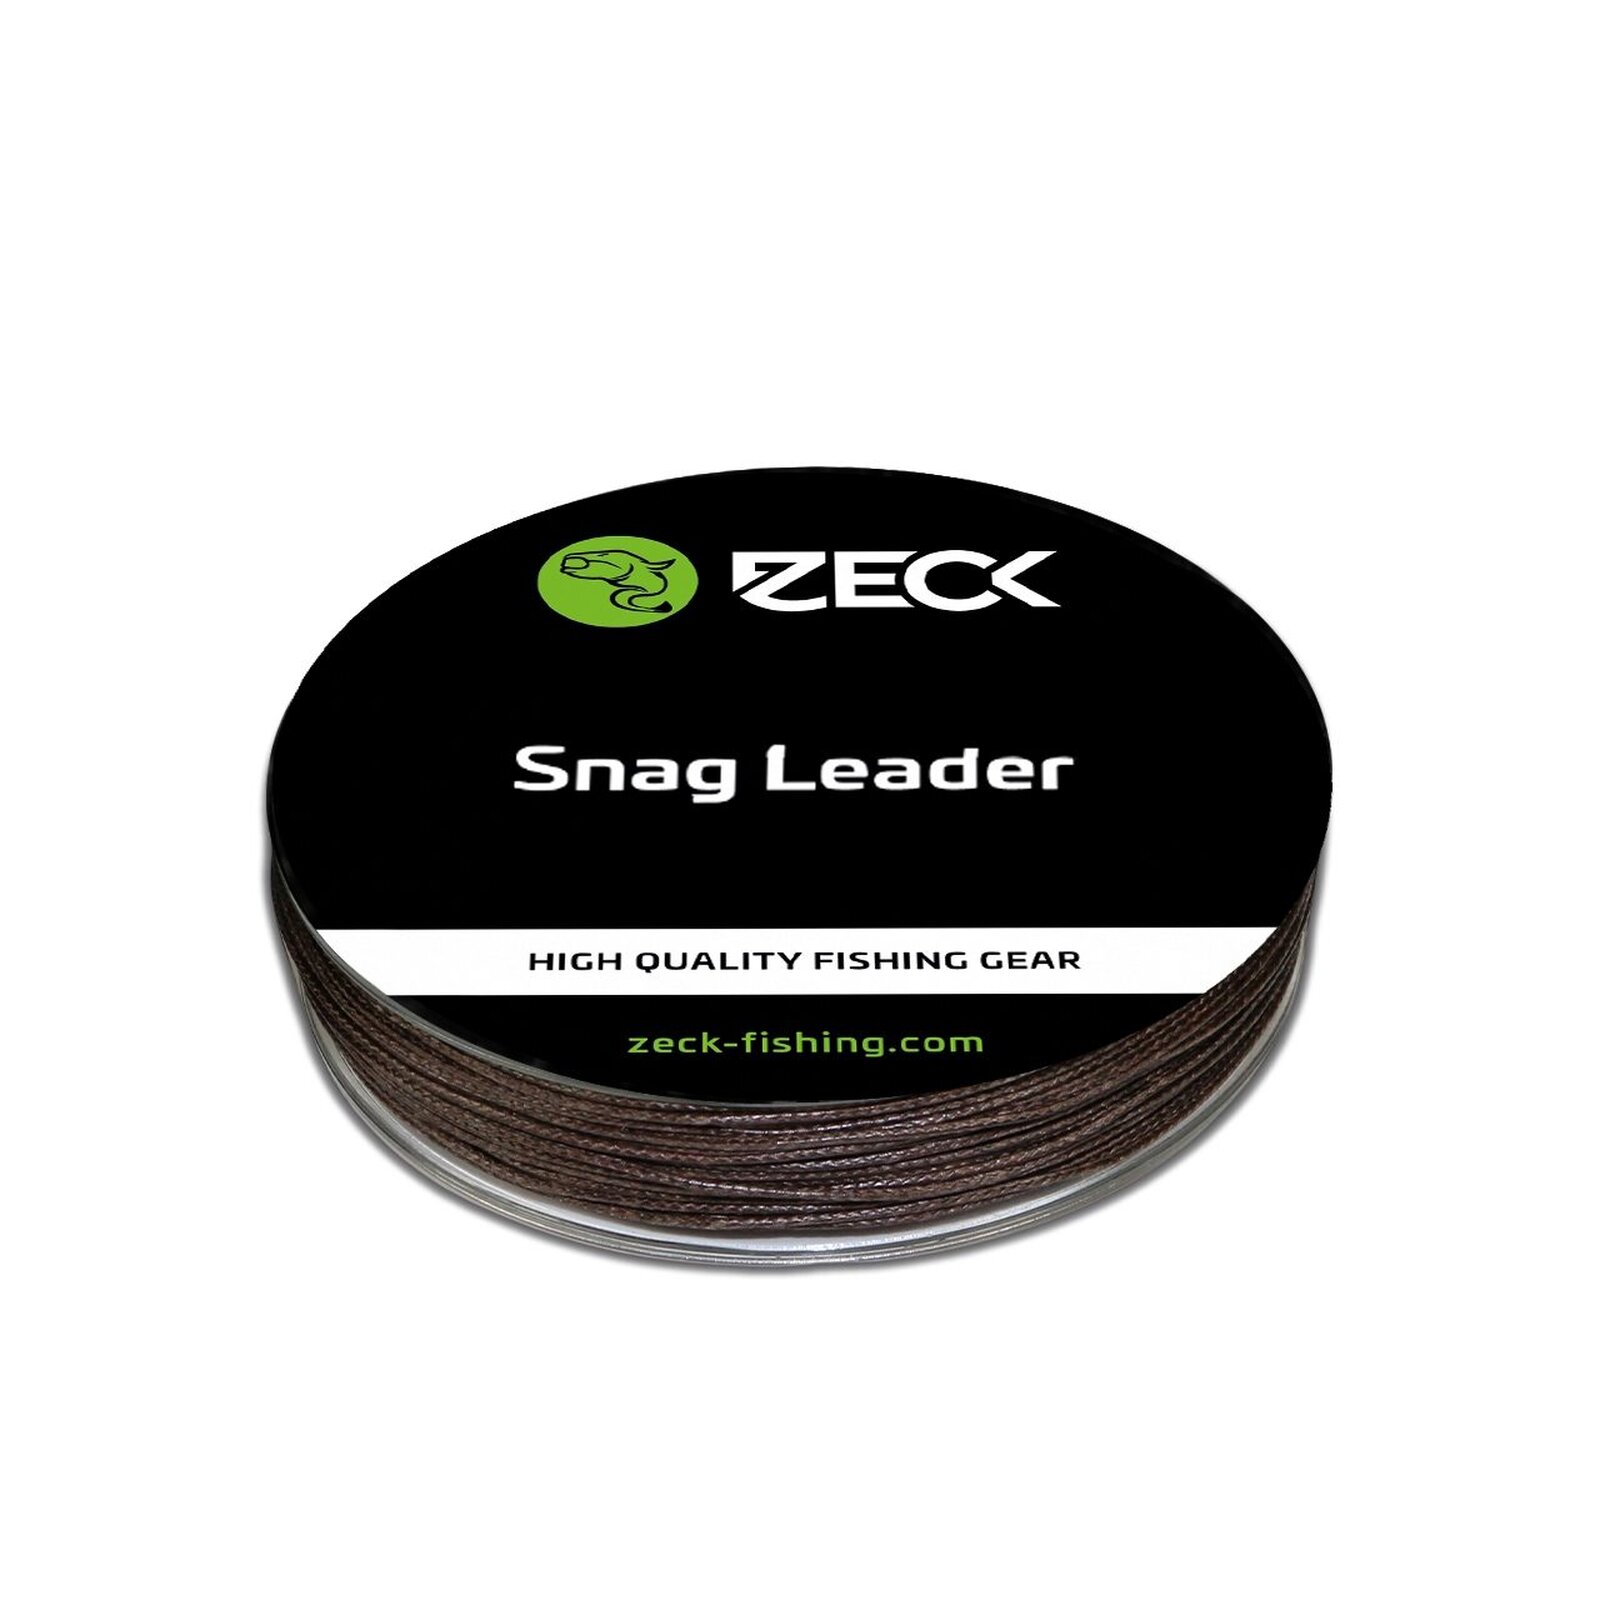 Zeck Snag Leader 50m